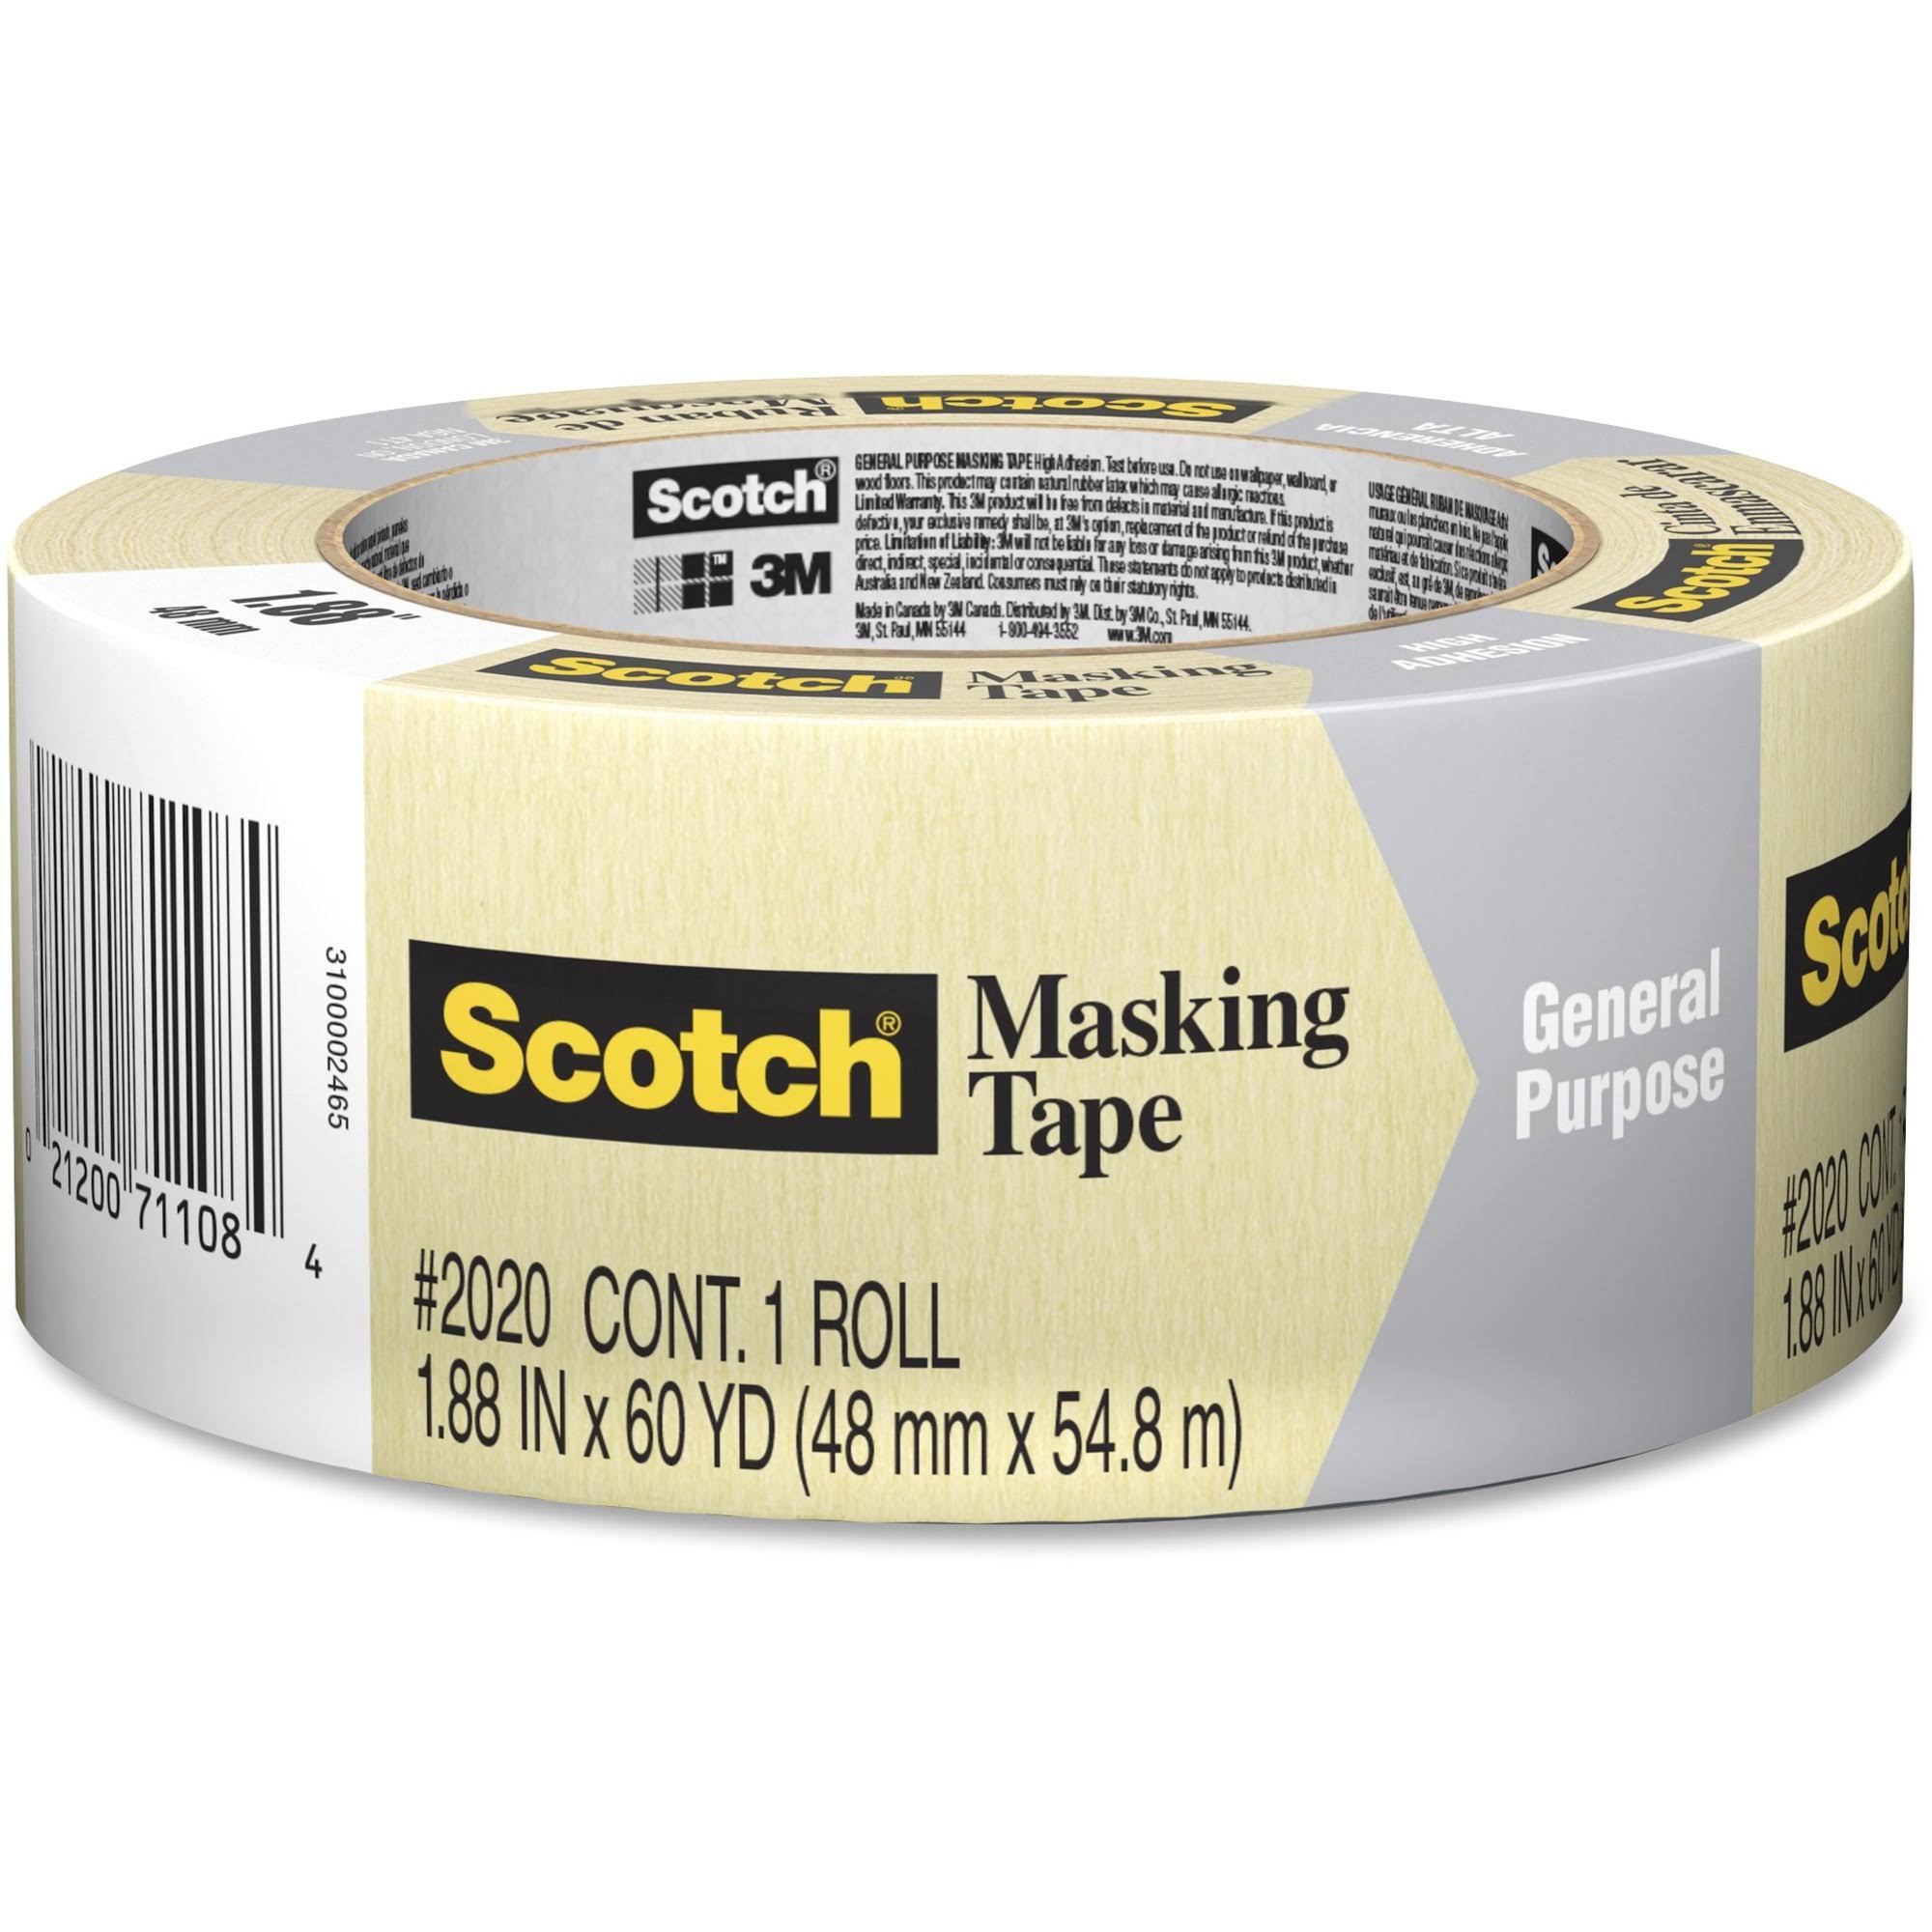 3M Scotch Masking Tape - 48mm x54.8m